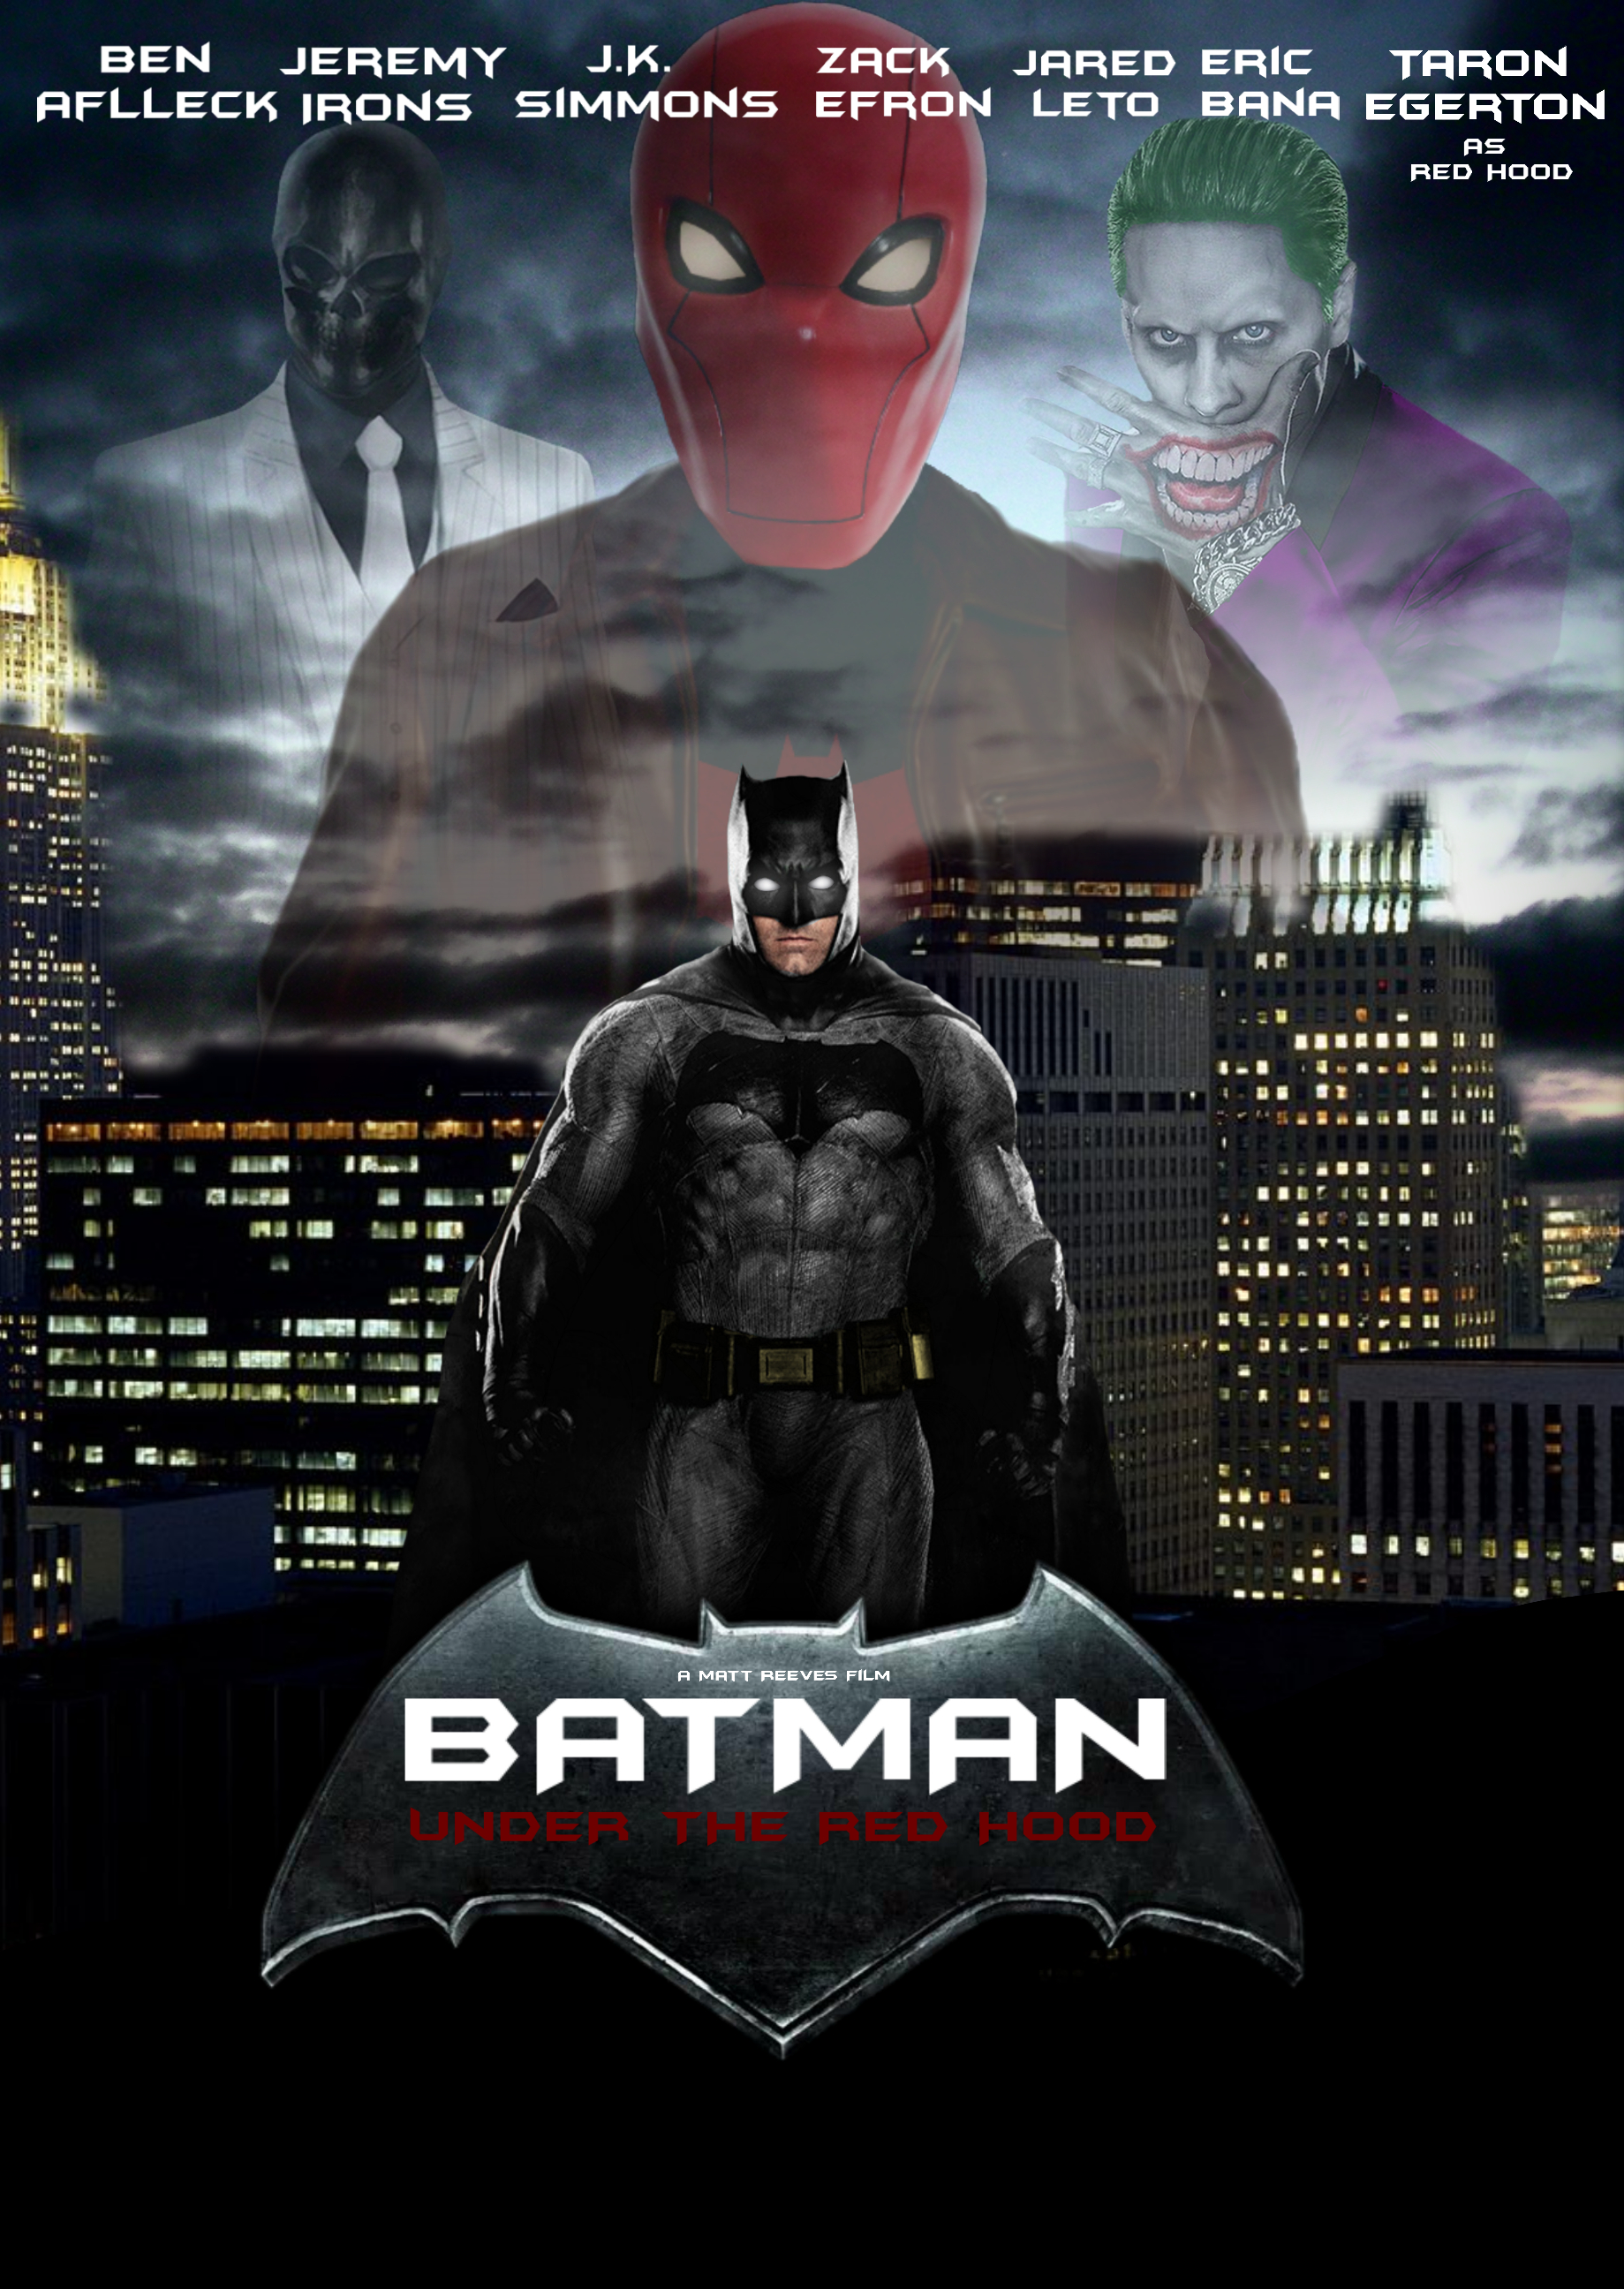 Batman : Under The Red Hood by Asthonx1 on DeviantArt